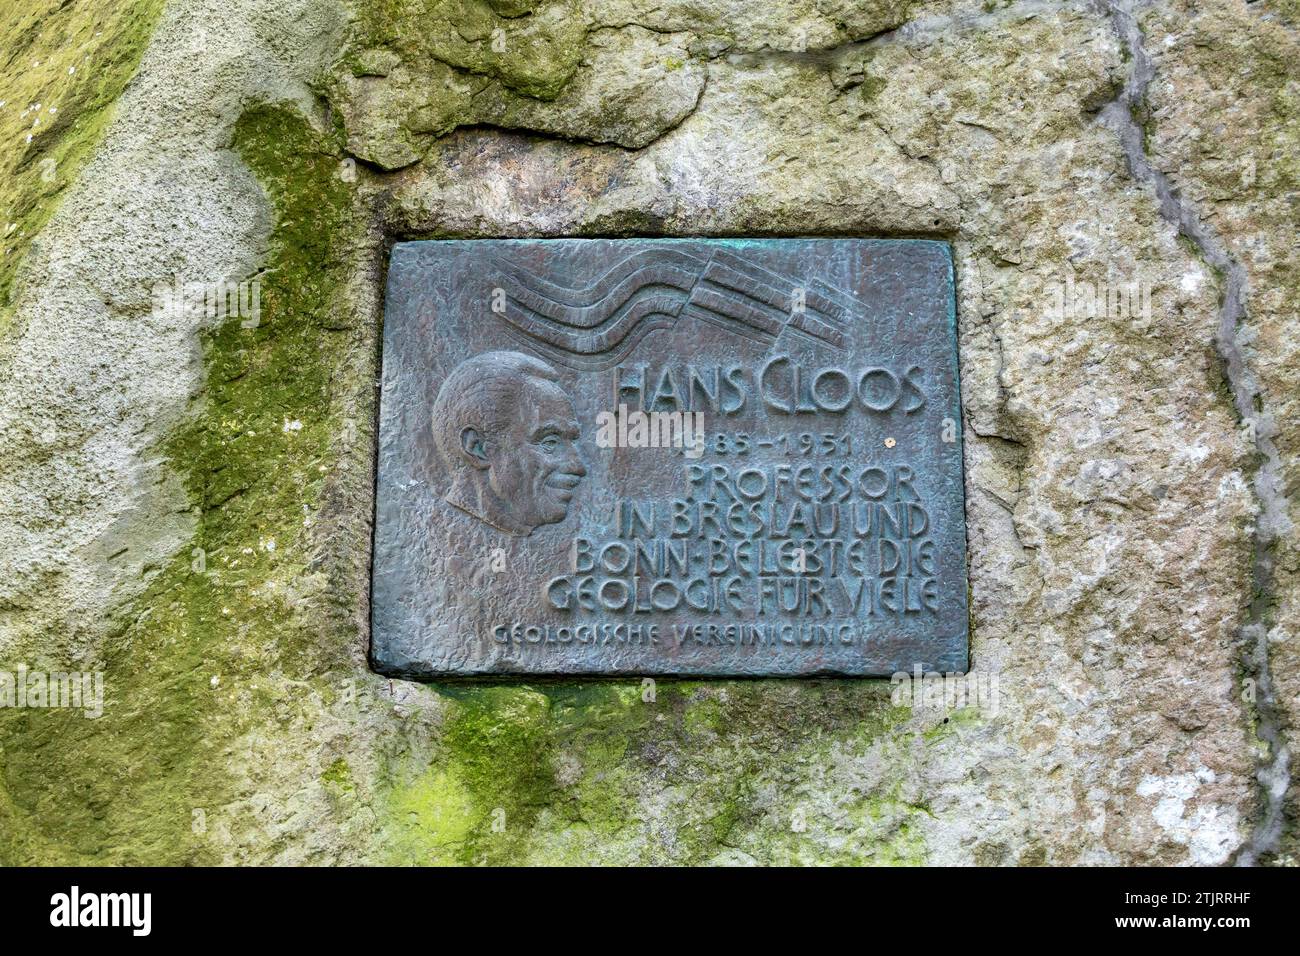 Plaque commémorative du professeur Hans Cloos à côté de la "piste des ânes" à Dragon's Rock, Königswinter, Rhénanie du Nord-Westphalie, Allemagne Banque D'Images